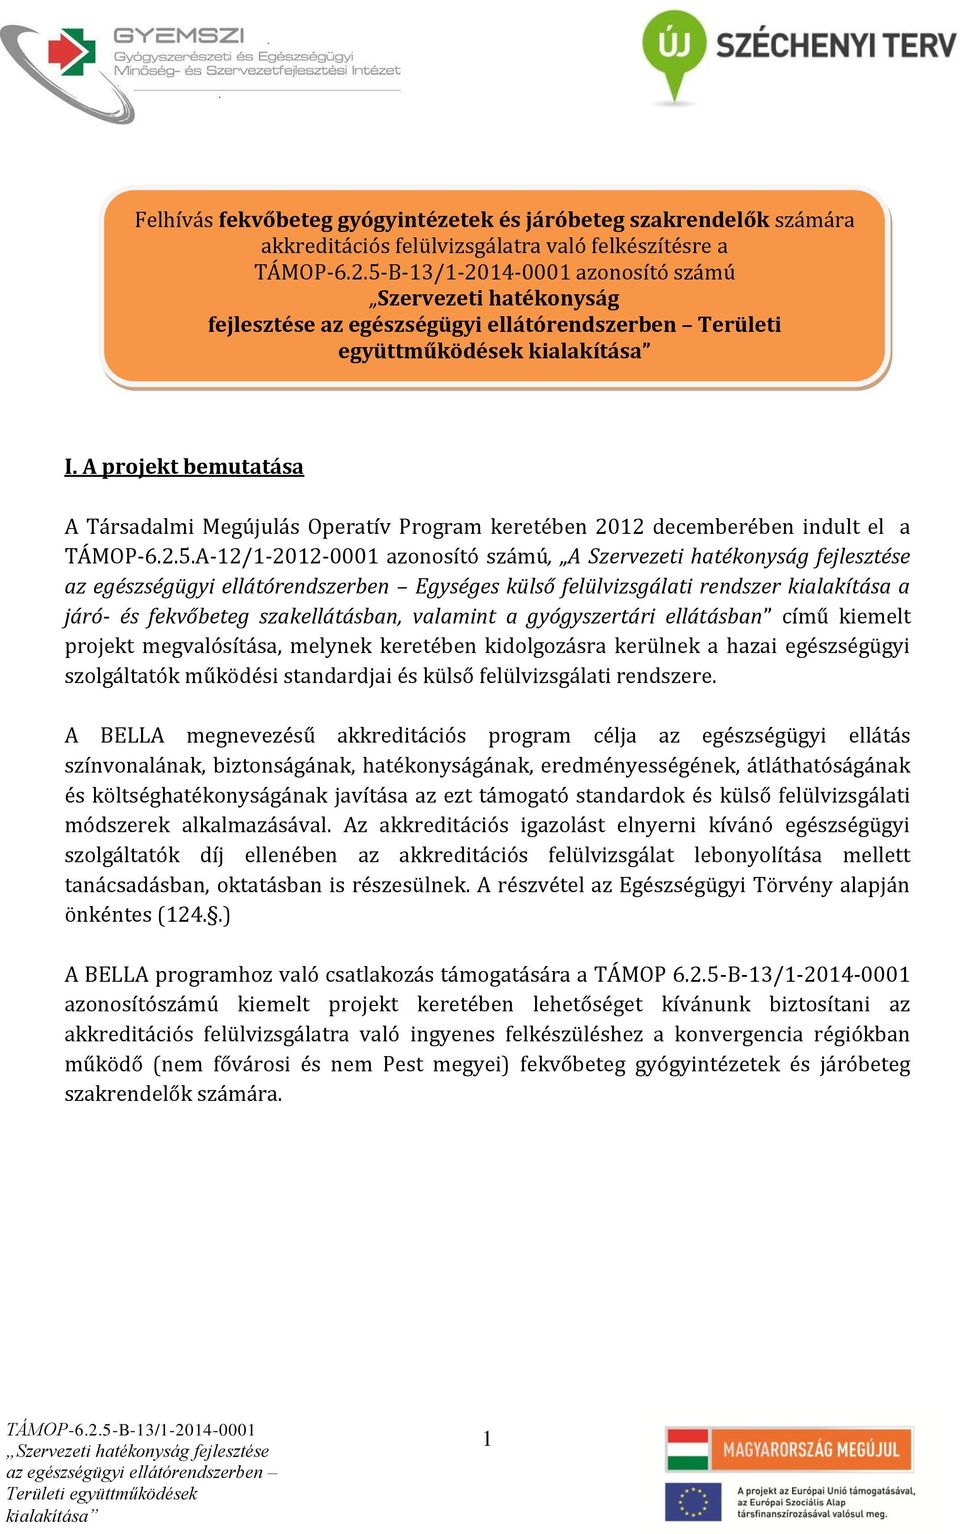 A projekt bemutatása A Társadalmi egújulás Operatív Program keretében 2012 decemberében indult el a TÁOP-6.2.5.